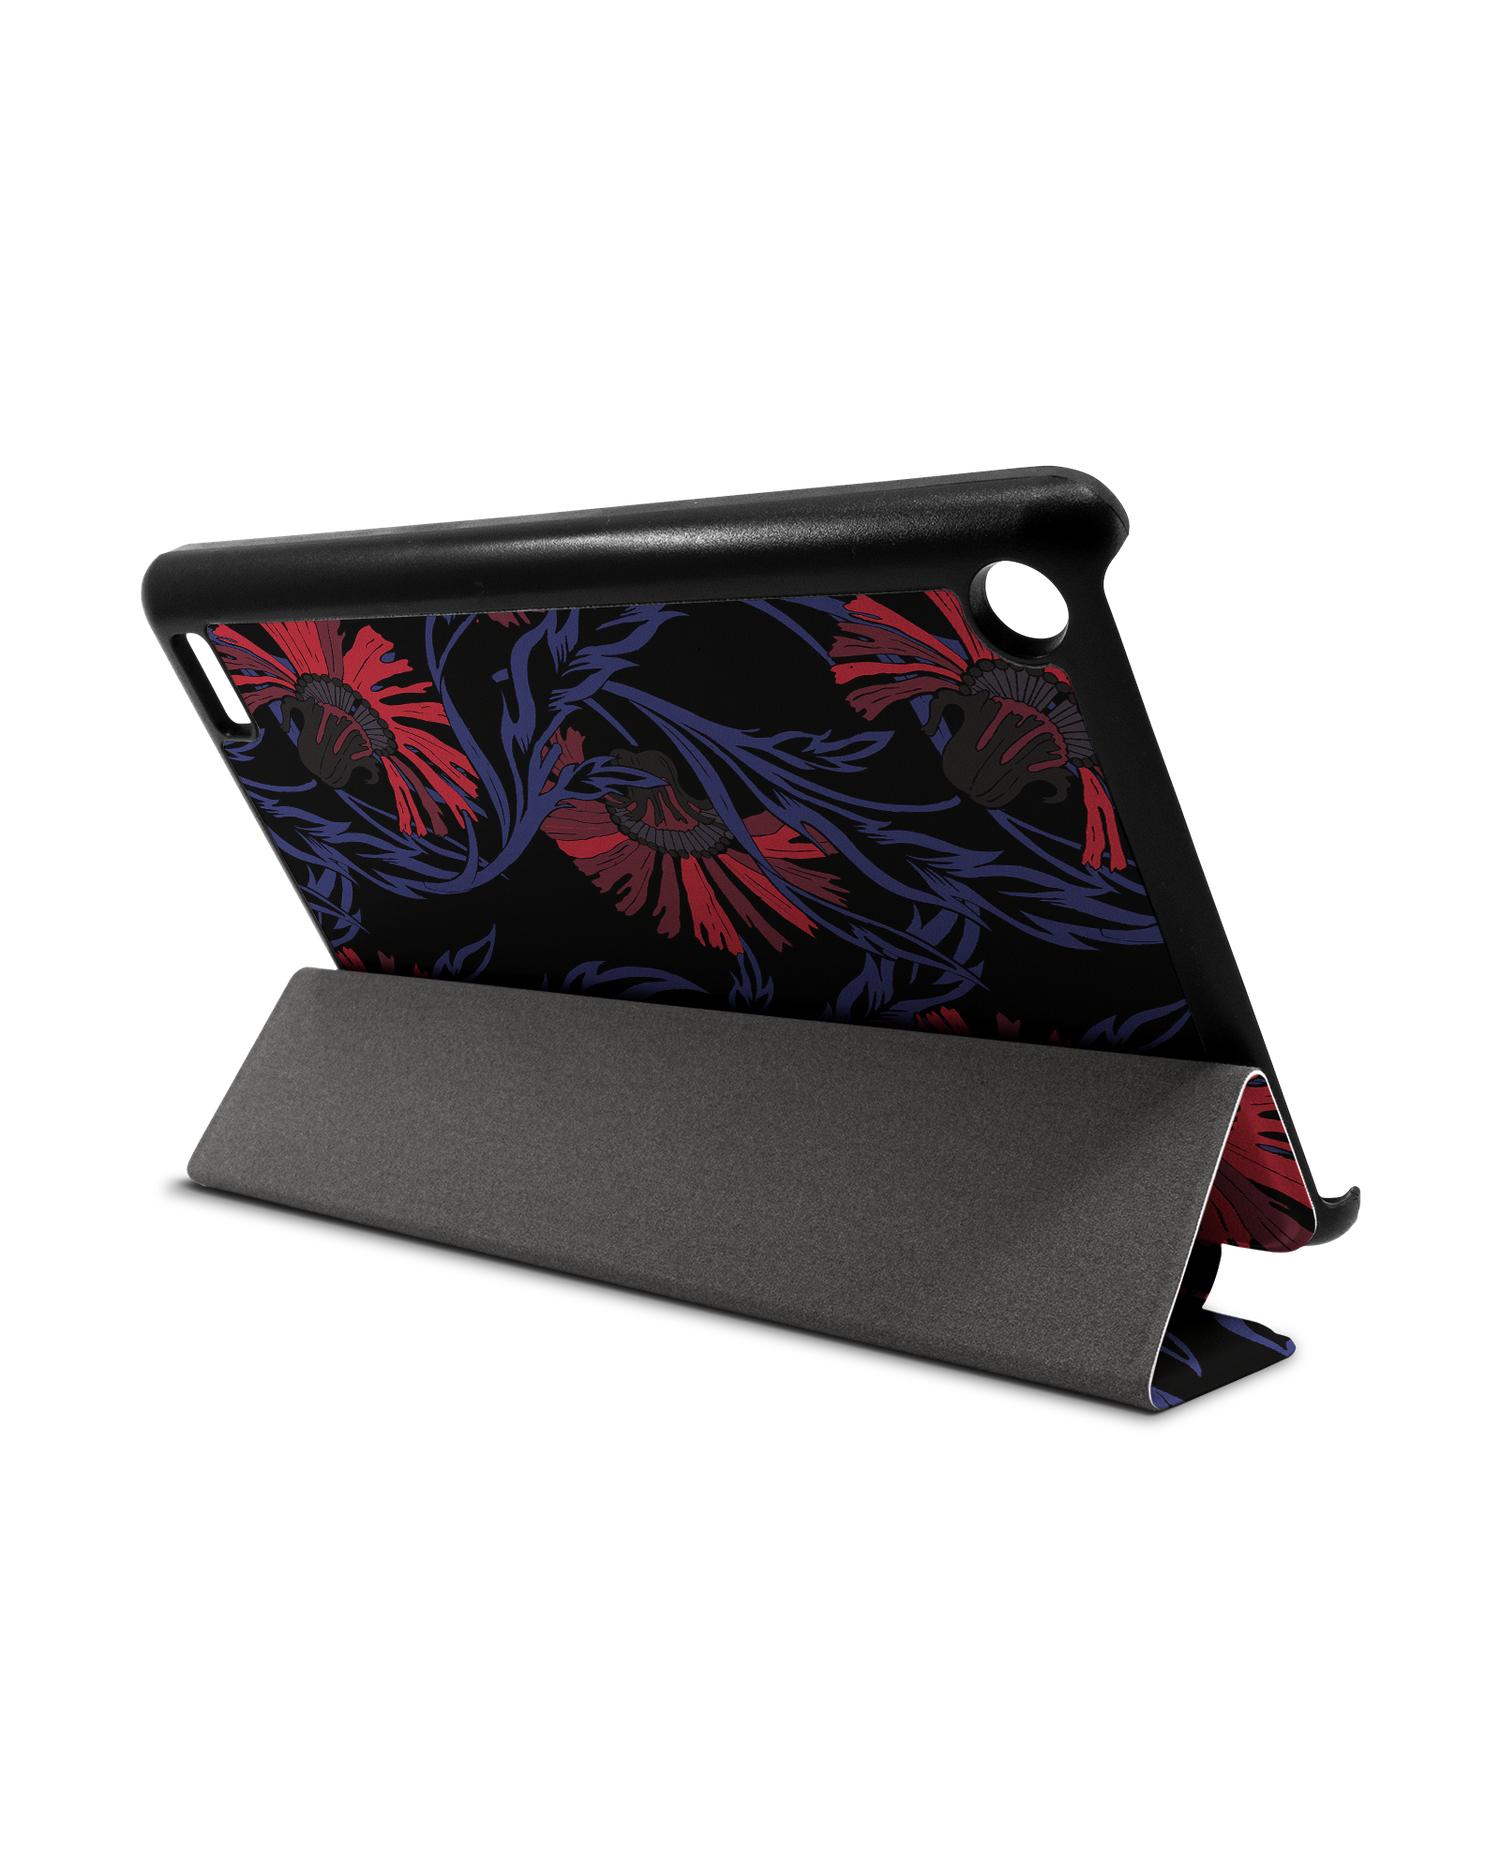 Midnight Floral Tablet Smart Case für Amazon Fire 7: Aufgestellt im Querformat